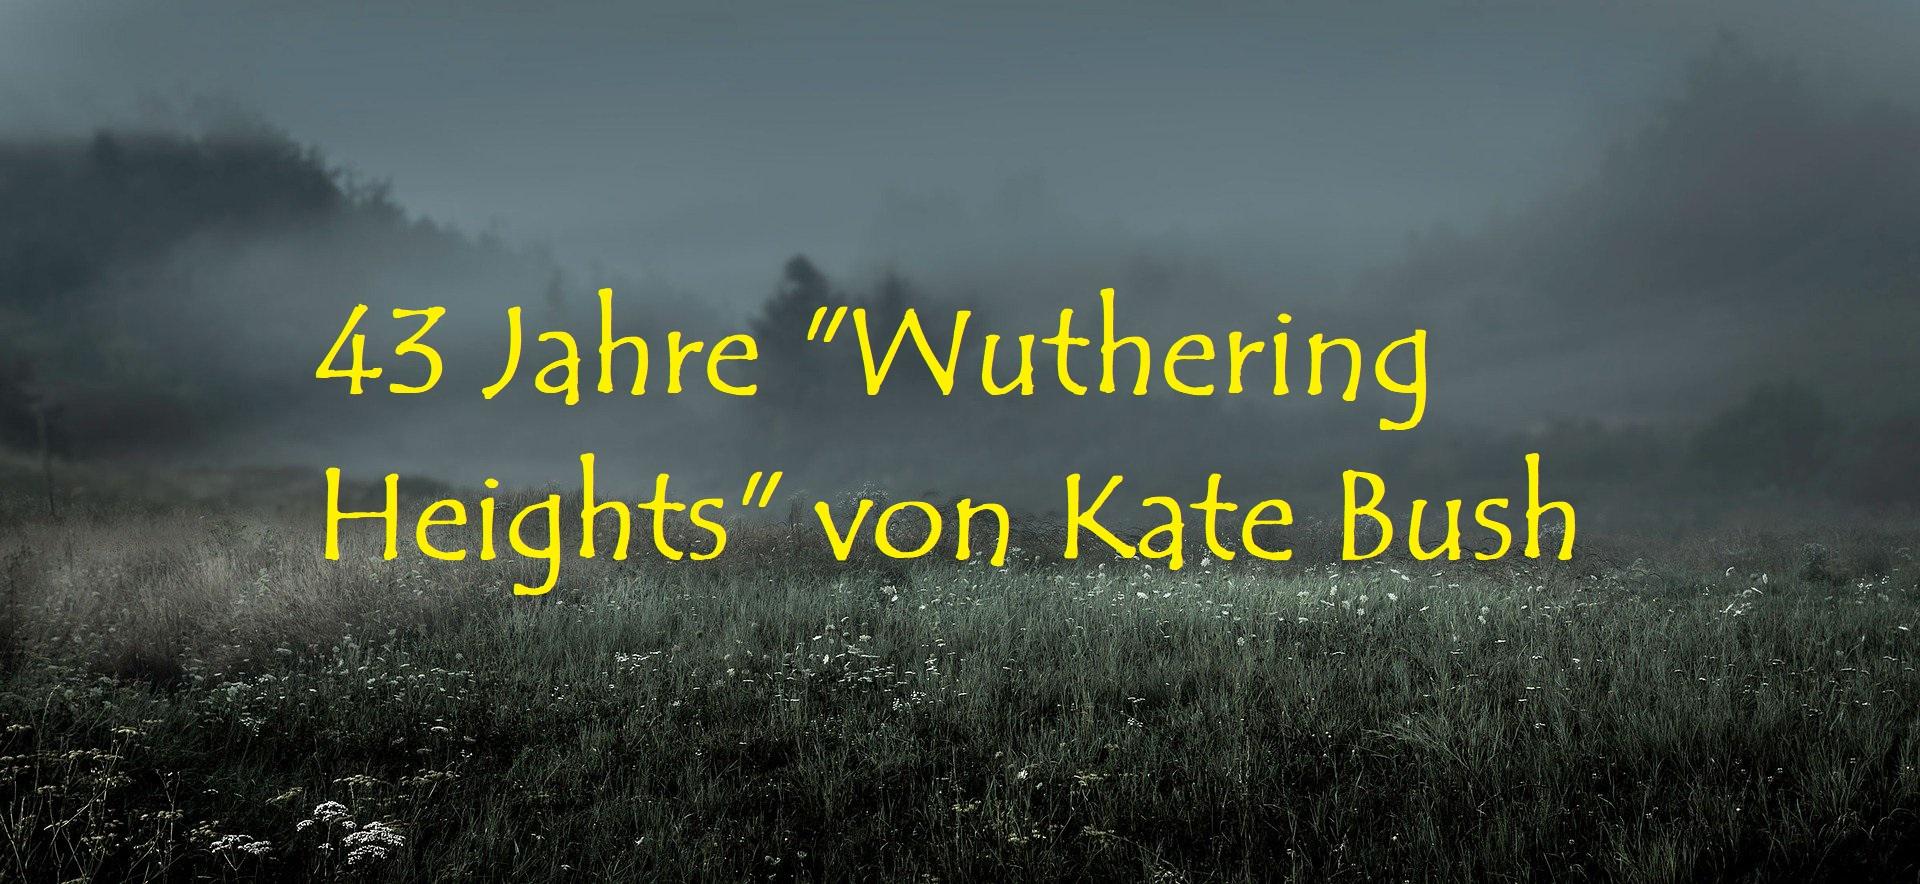 43 Jahre "Wuthering Heights" von Kate Bush - Bild von grubertransmedia auf Pixabay